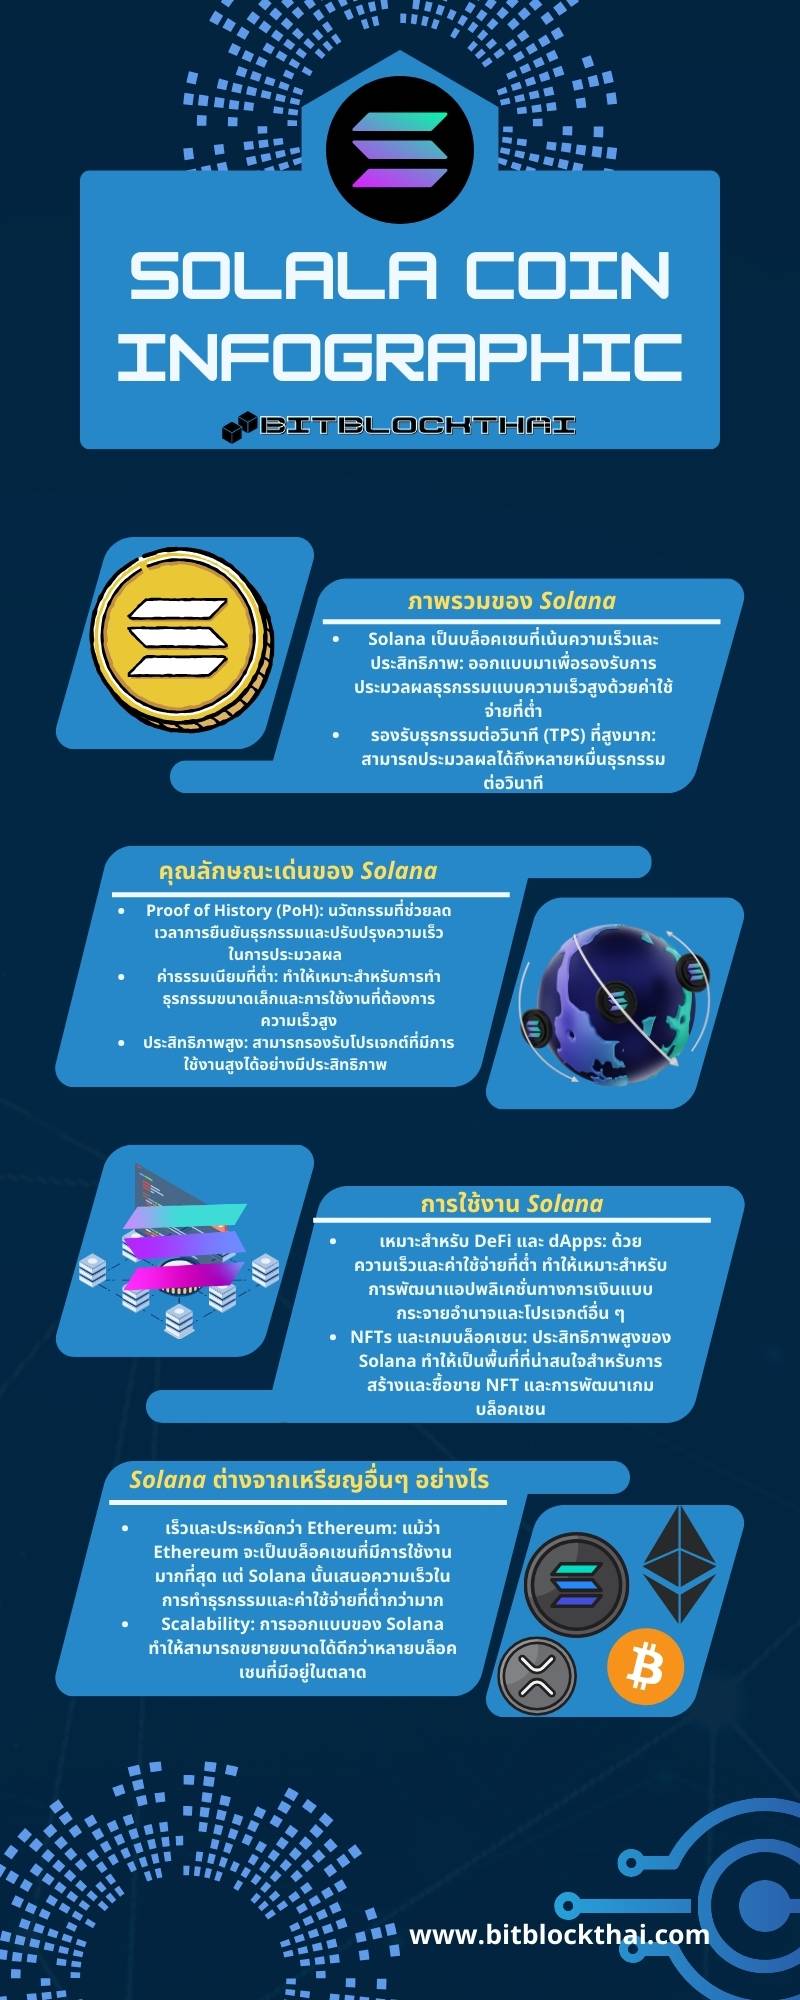 โซลานาอินโฟกราฟฟิก solana infographic